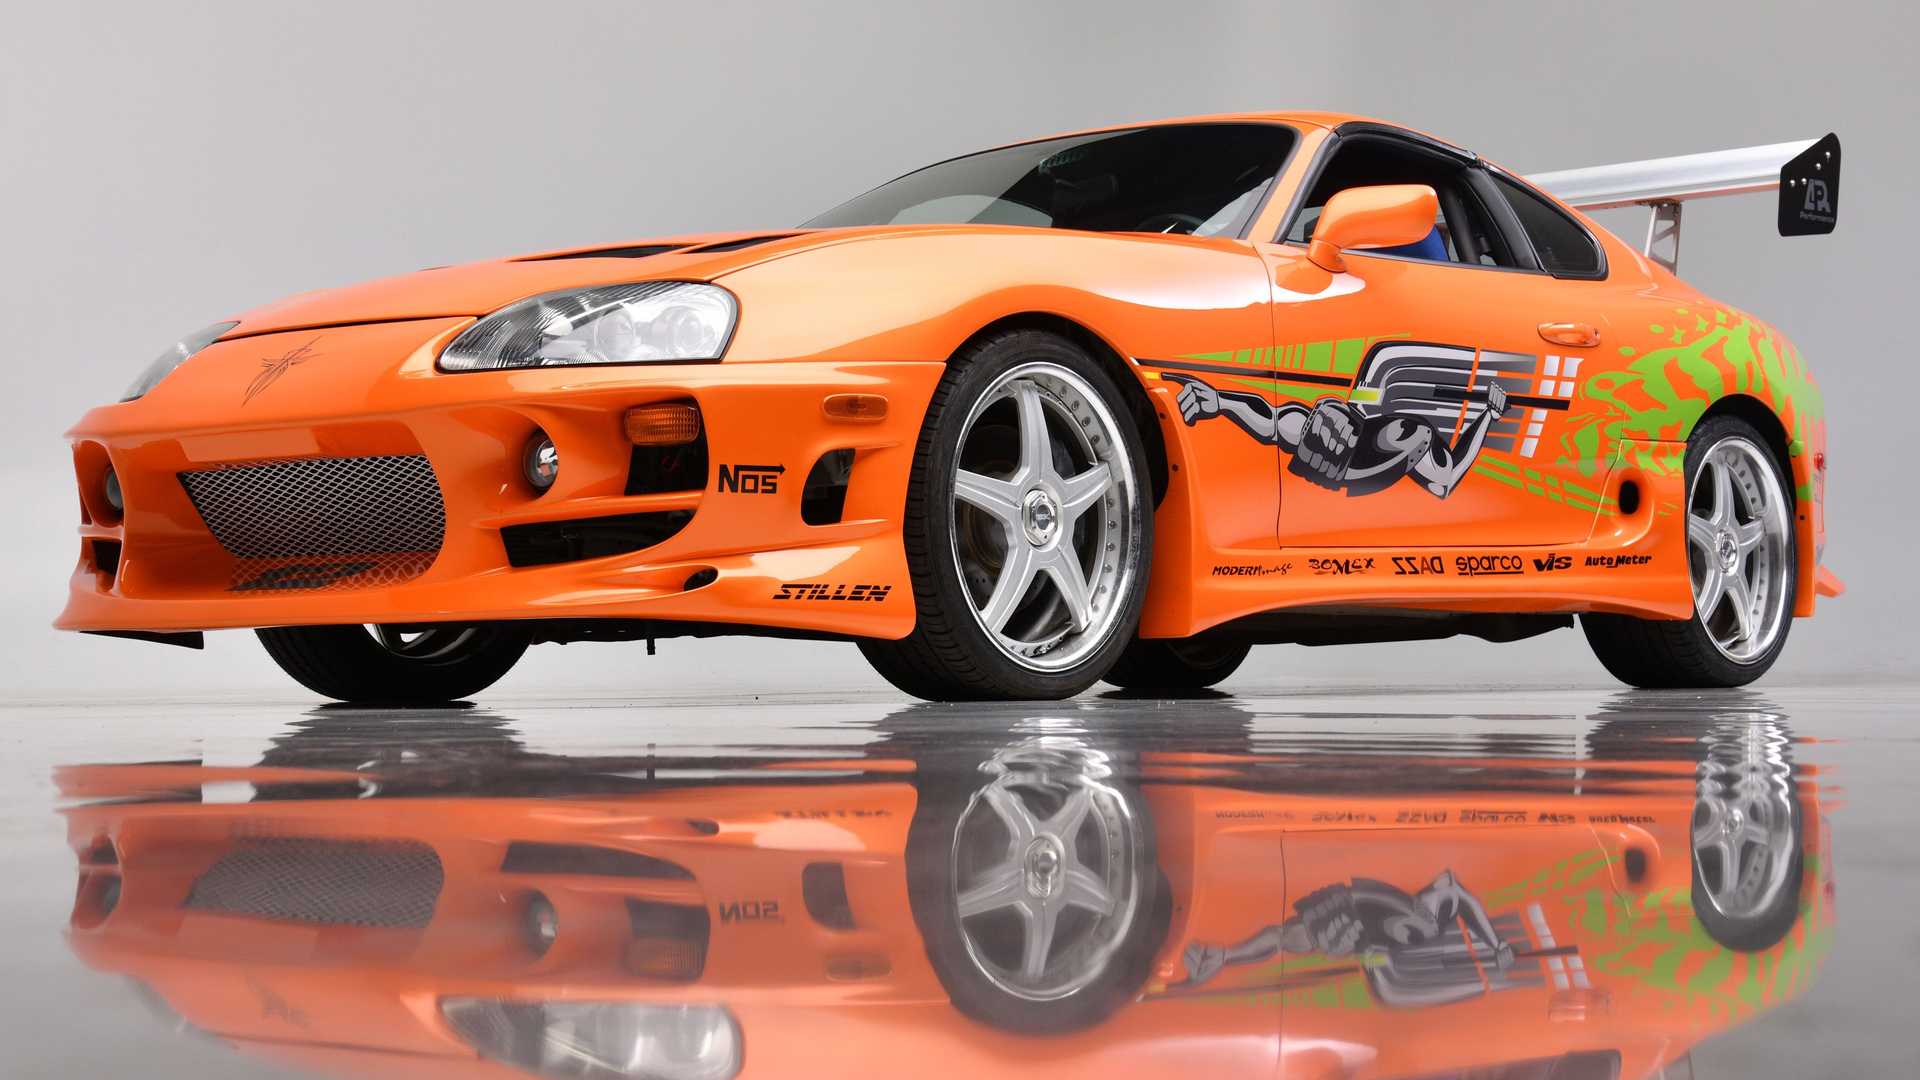 نمای سه چهارم تویوتا سوپرا فیلم سریع و خشن / Fast & Furious Toyota Supra نارنجی رنگ